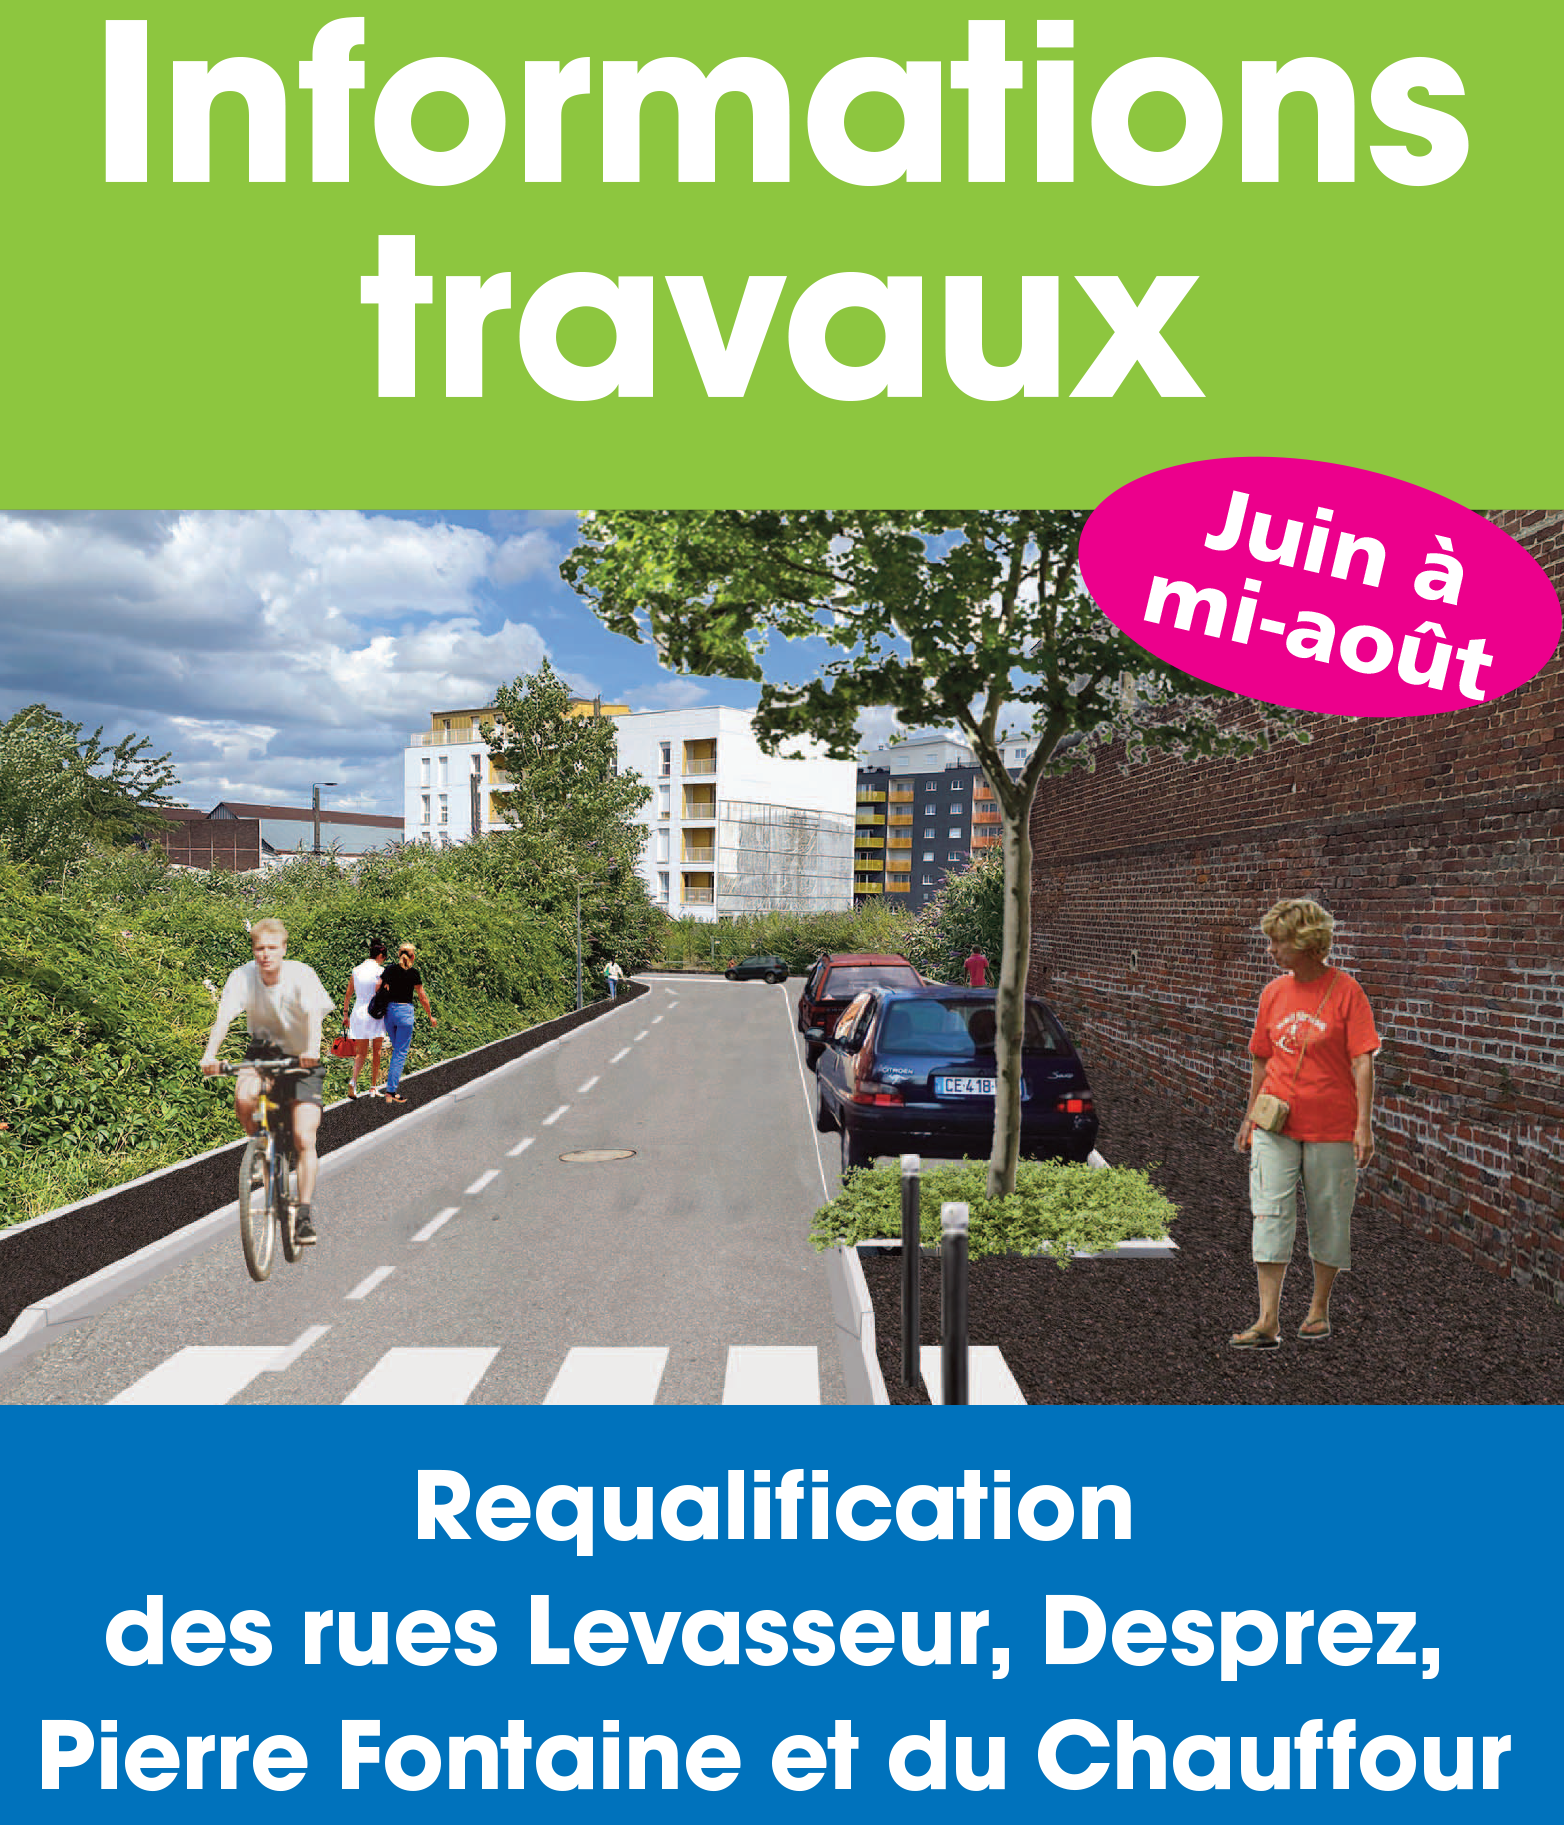 Infos travaux : Requalification des rues Levasseur, Desprez, Pierre Fontaine et du Chauffour